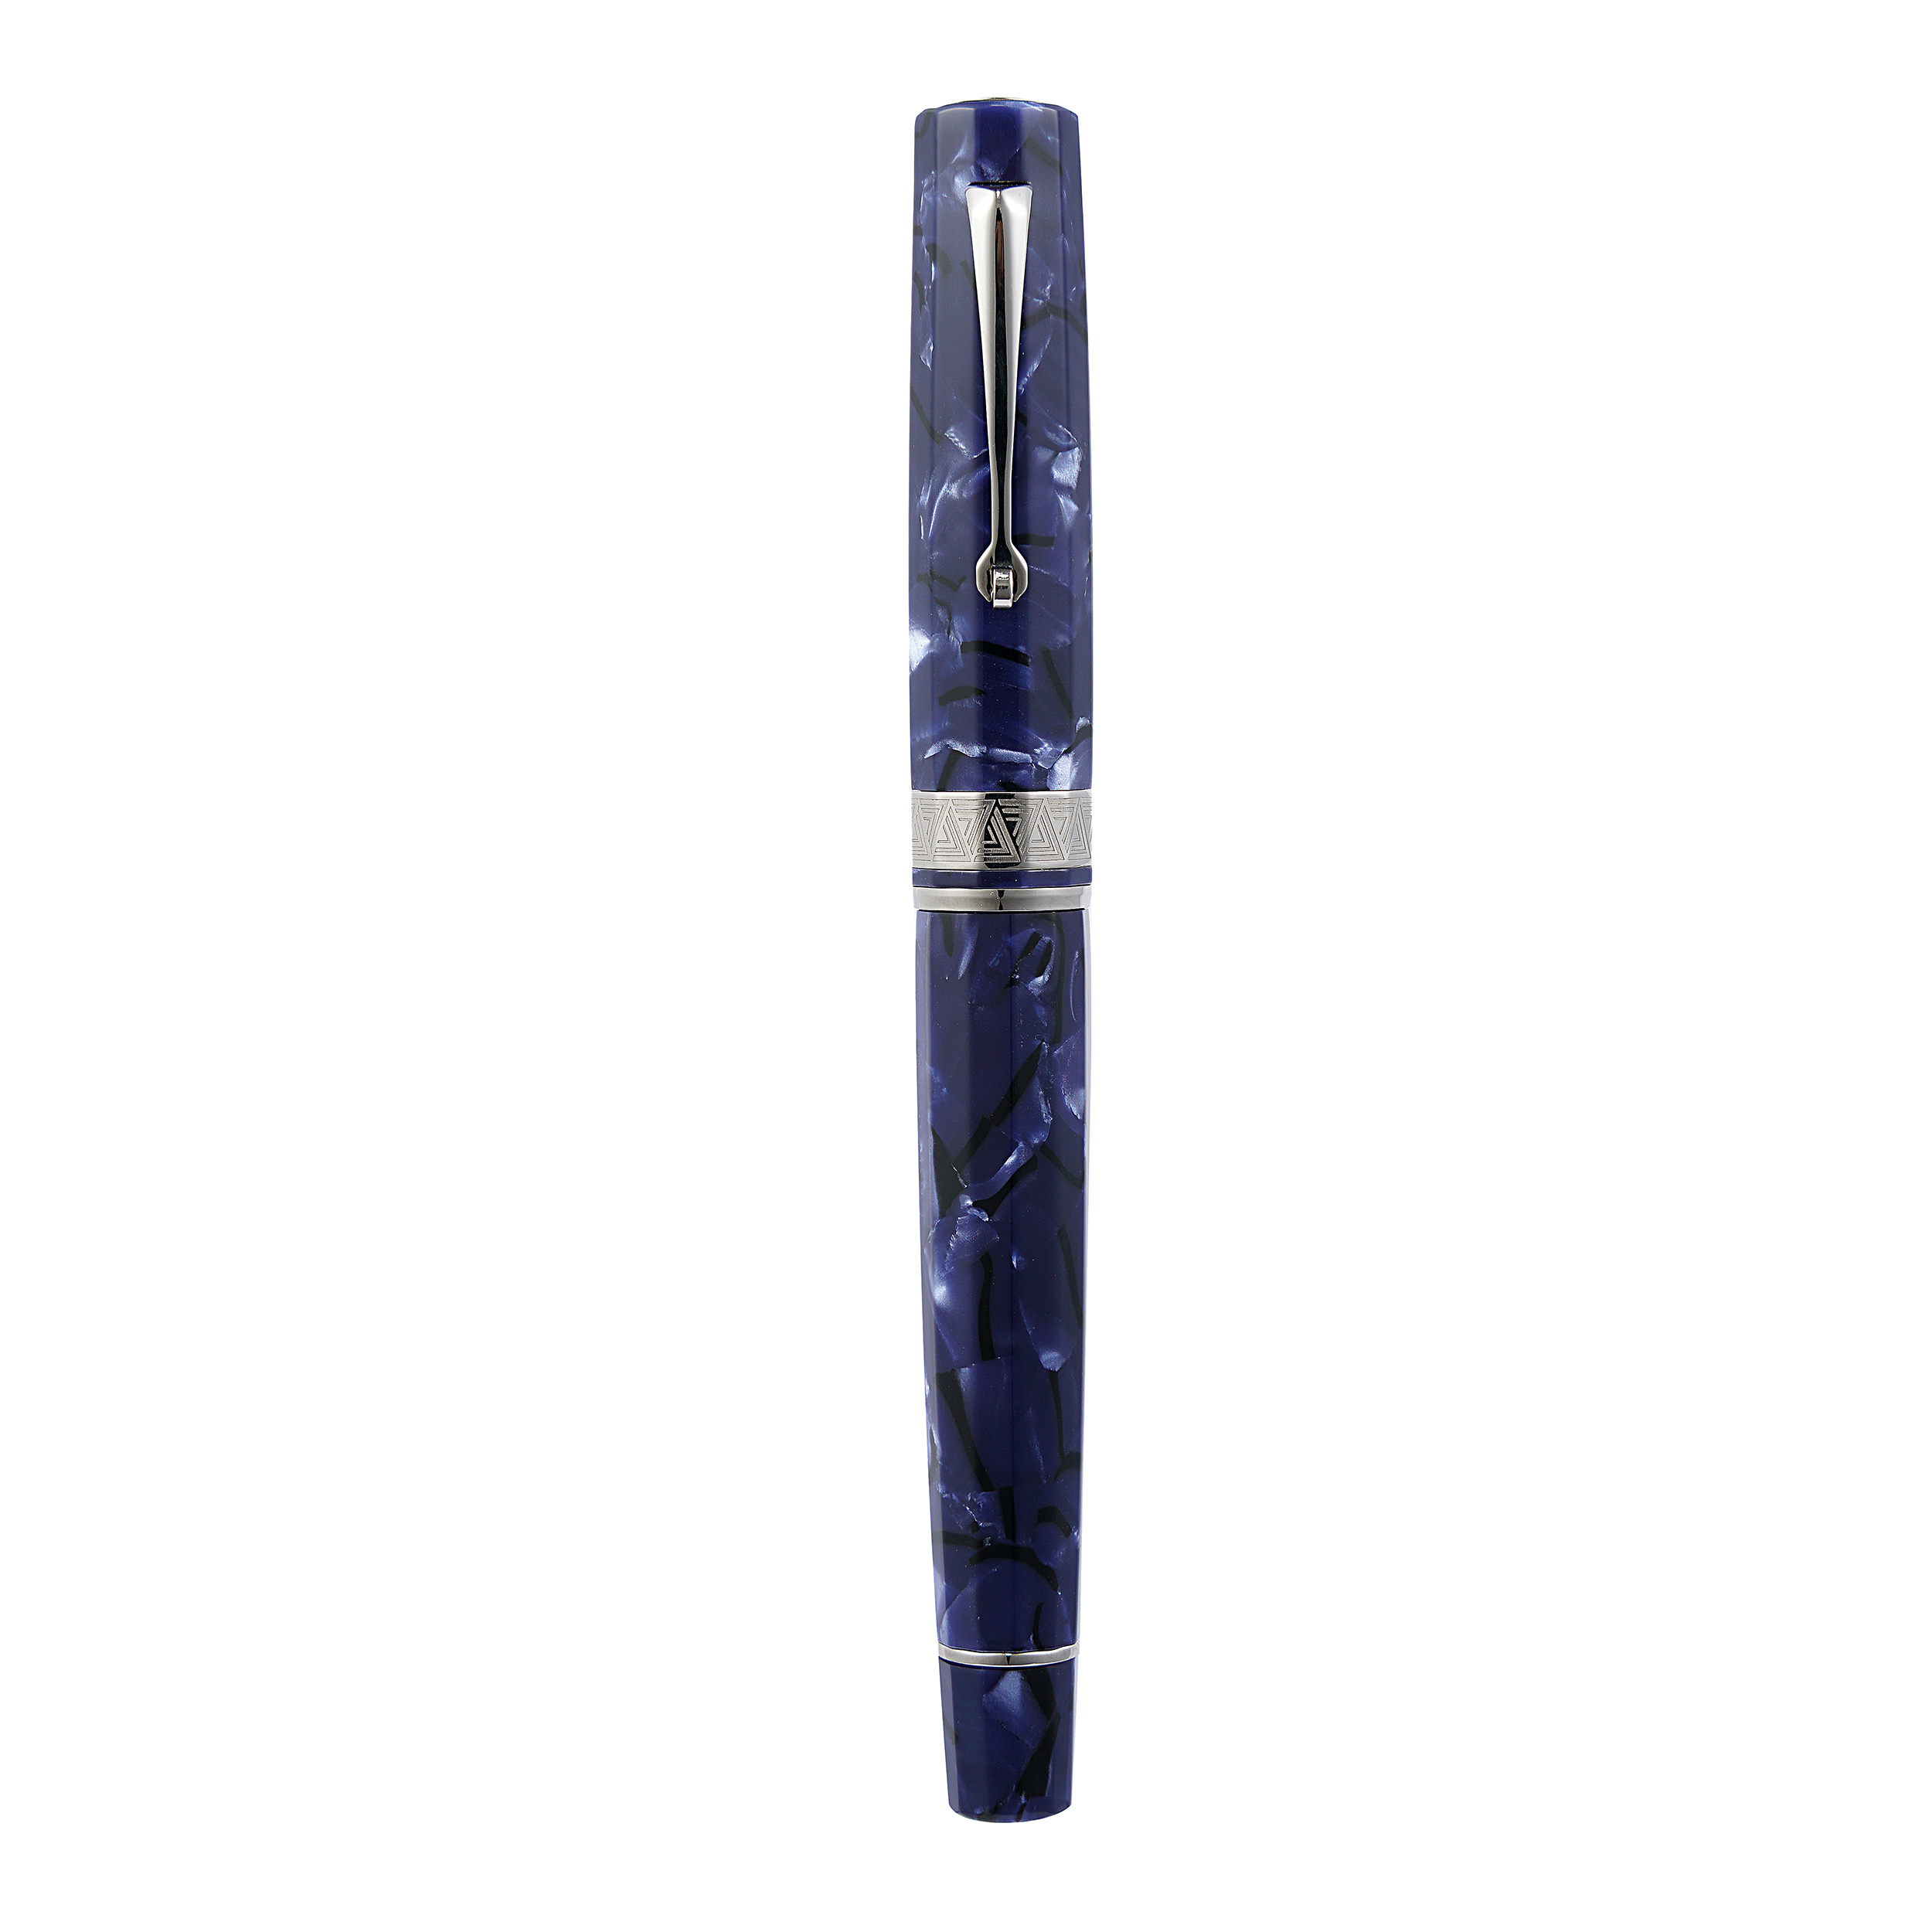 Omas Paragon Blue Royale Silver Trim Fountain Pen - Pencraft the boutique